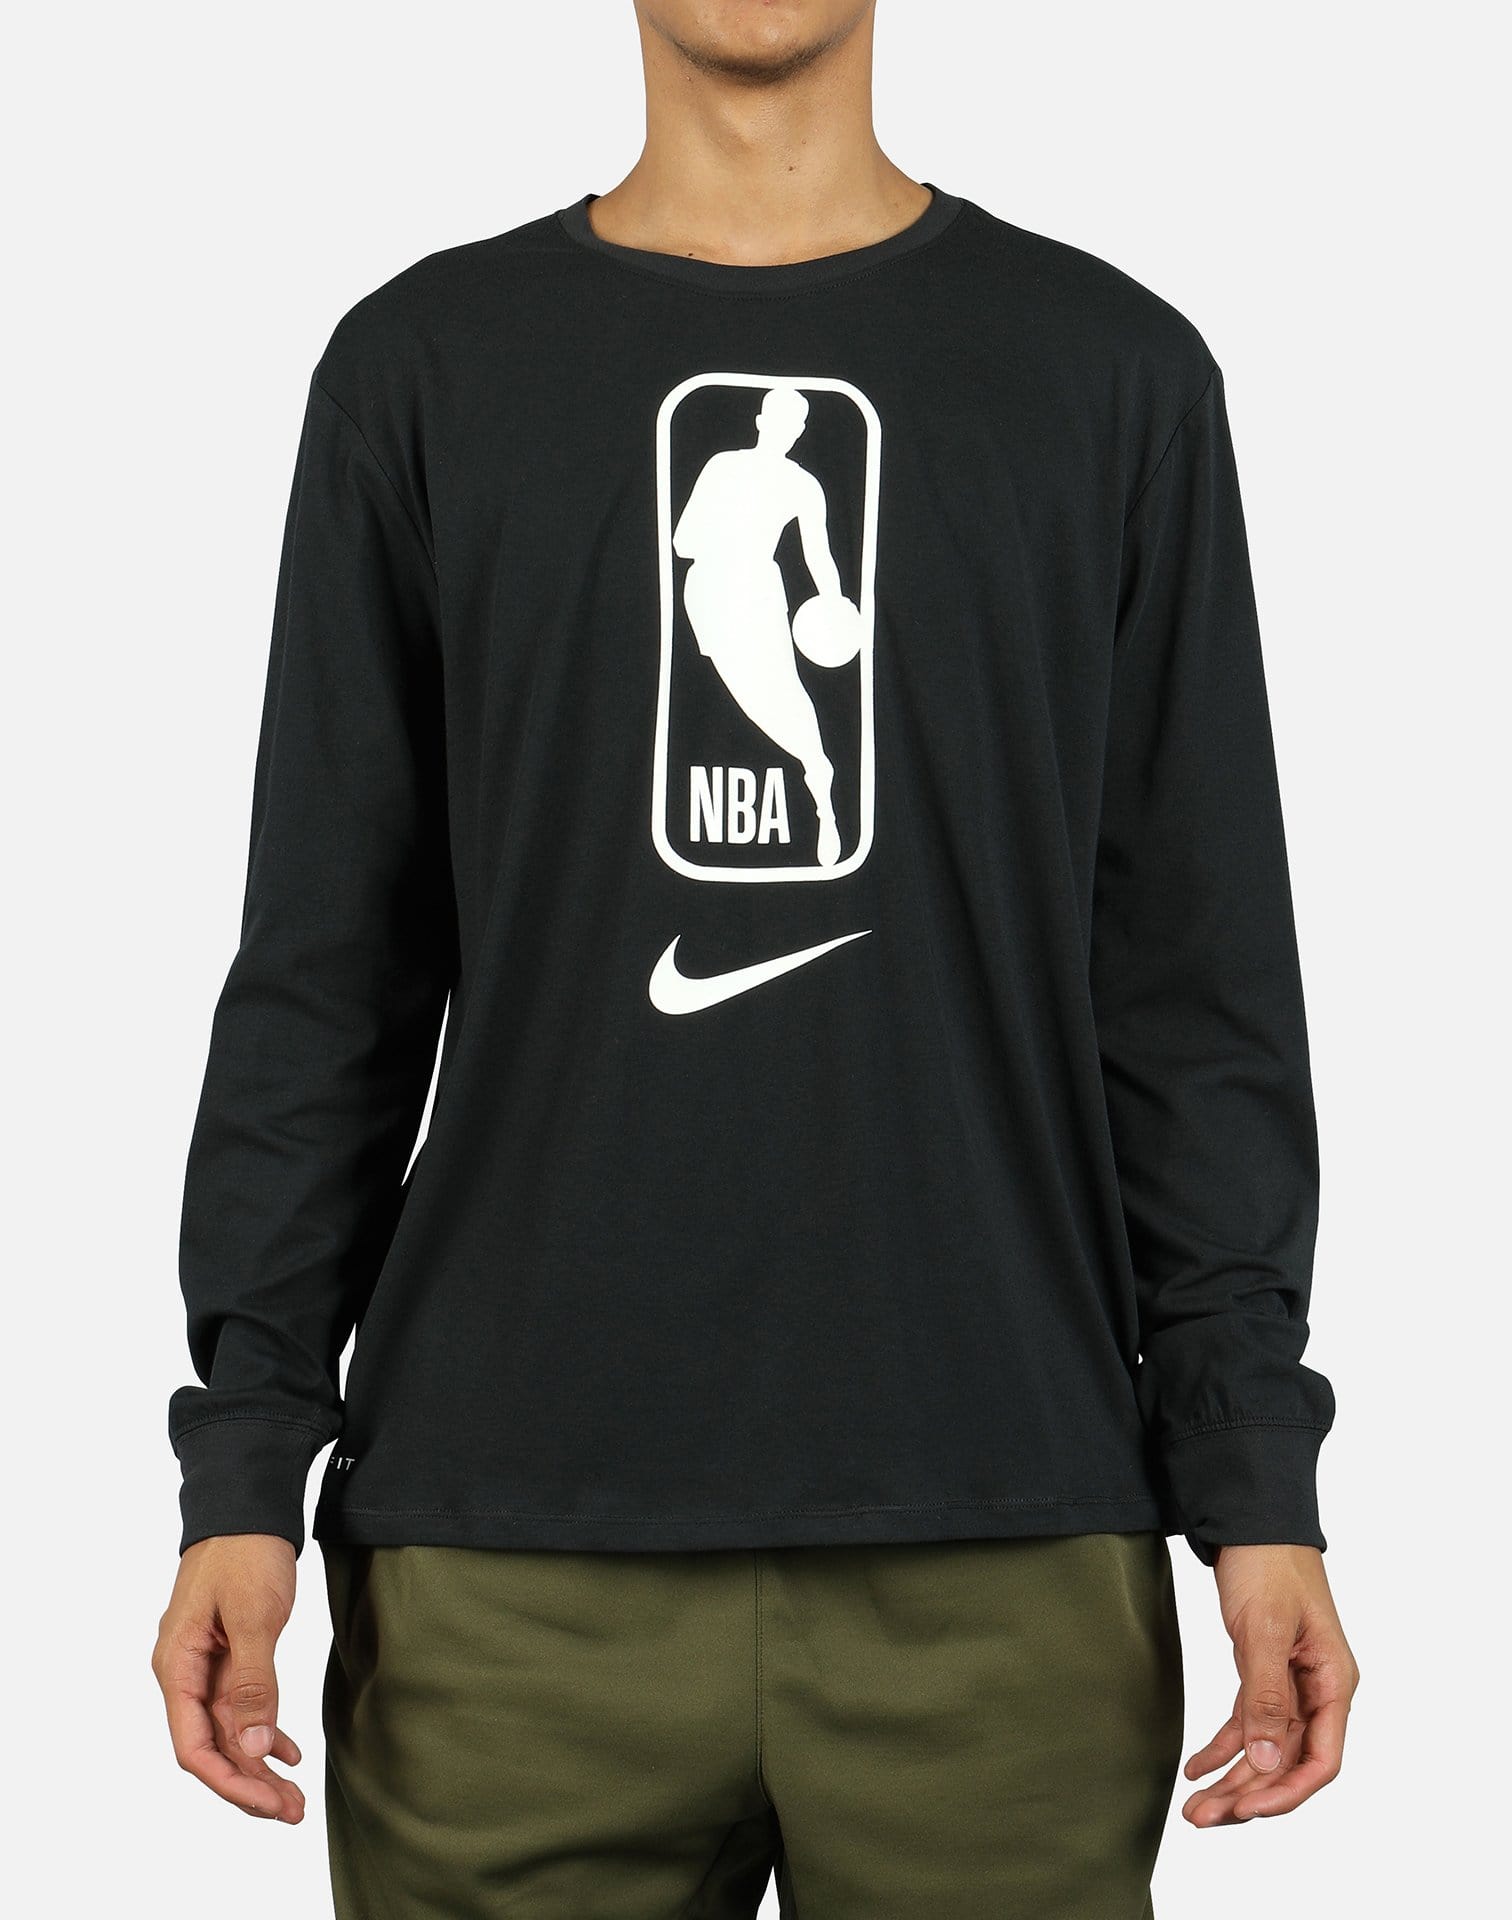 Team 31 Standard Issue Men's Nike Dri-FIT NBA Full-Zip Hoodie - Black